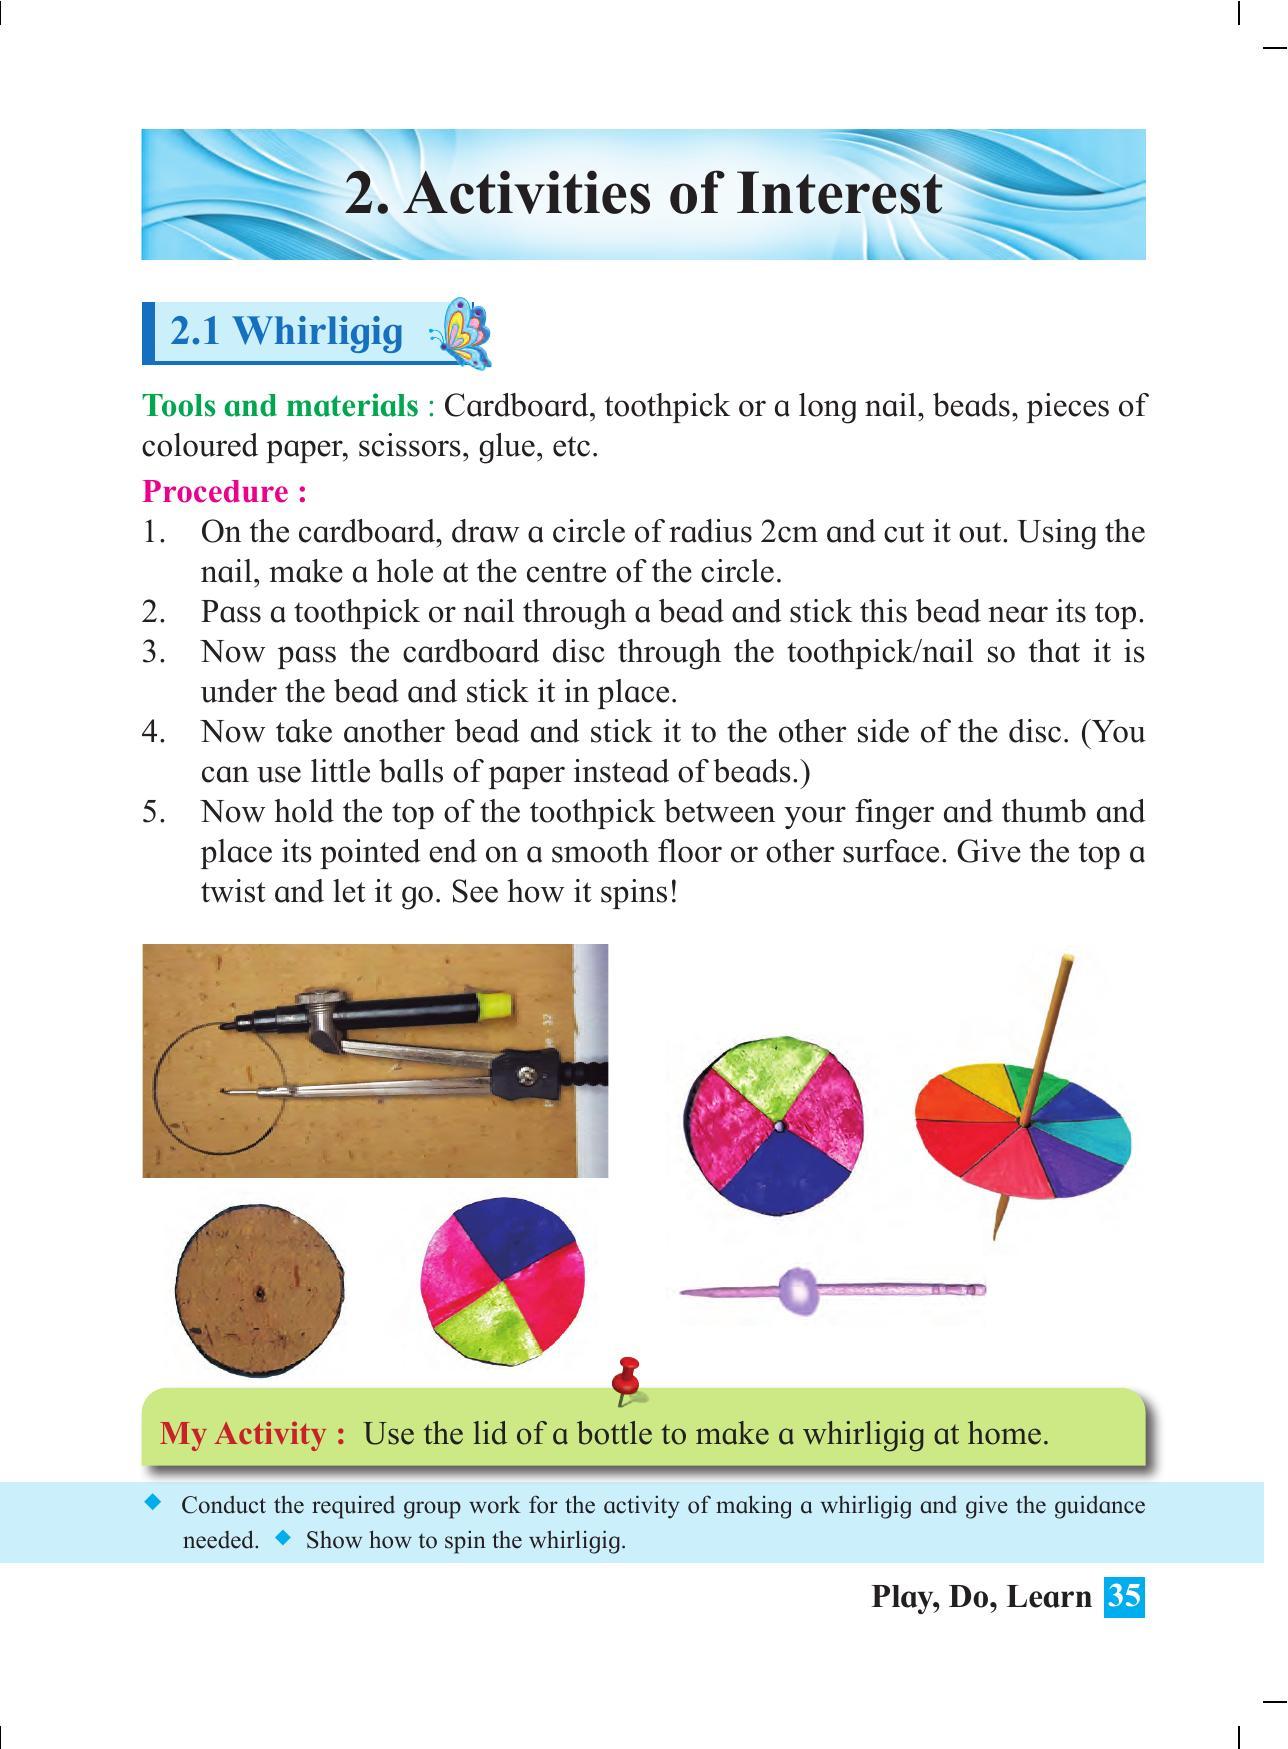 Maharashtra Board Class 4 Play Do Learn (English Medium) Textbook - Page 44